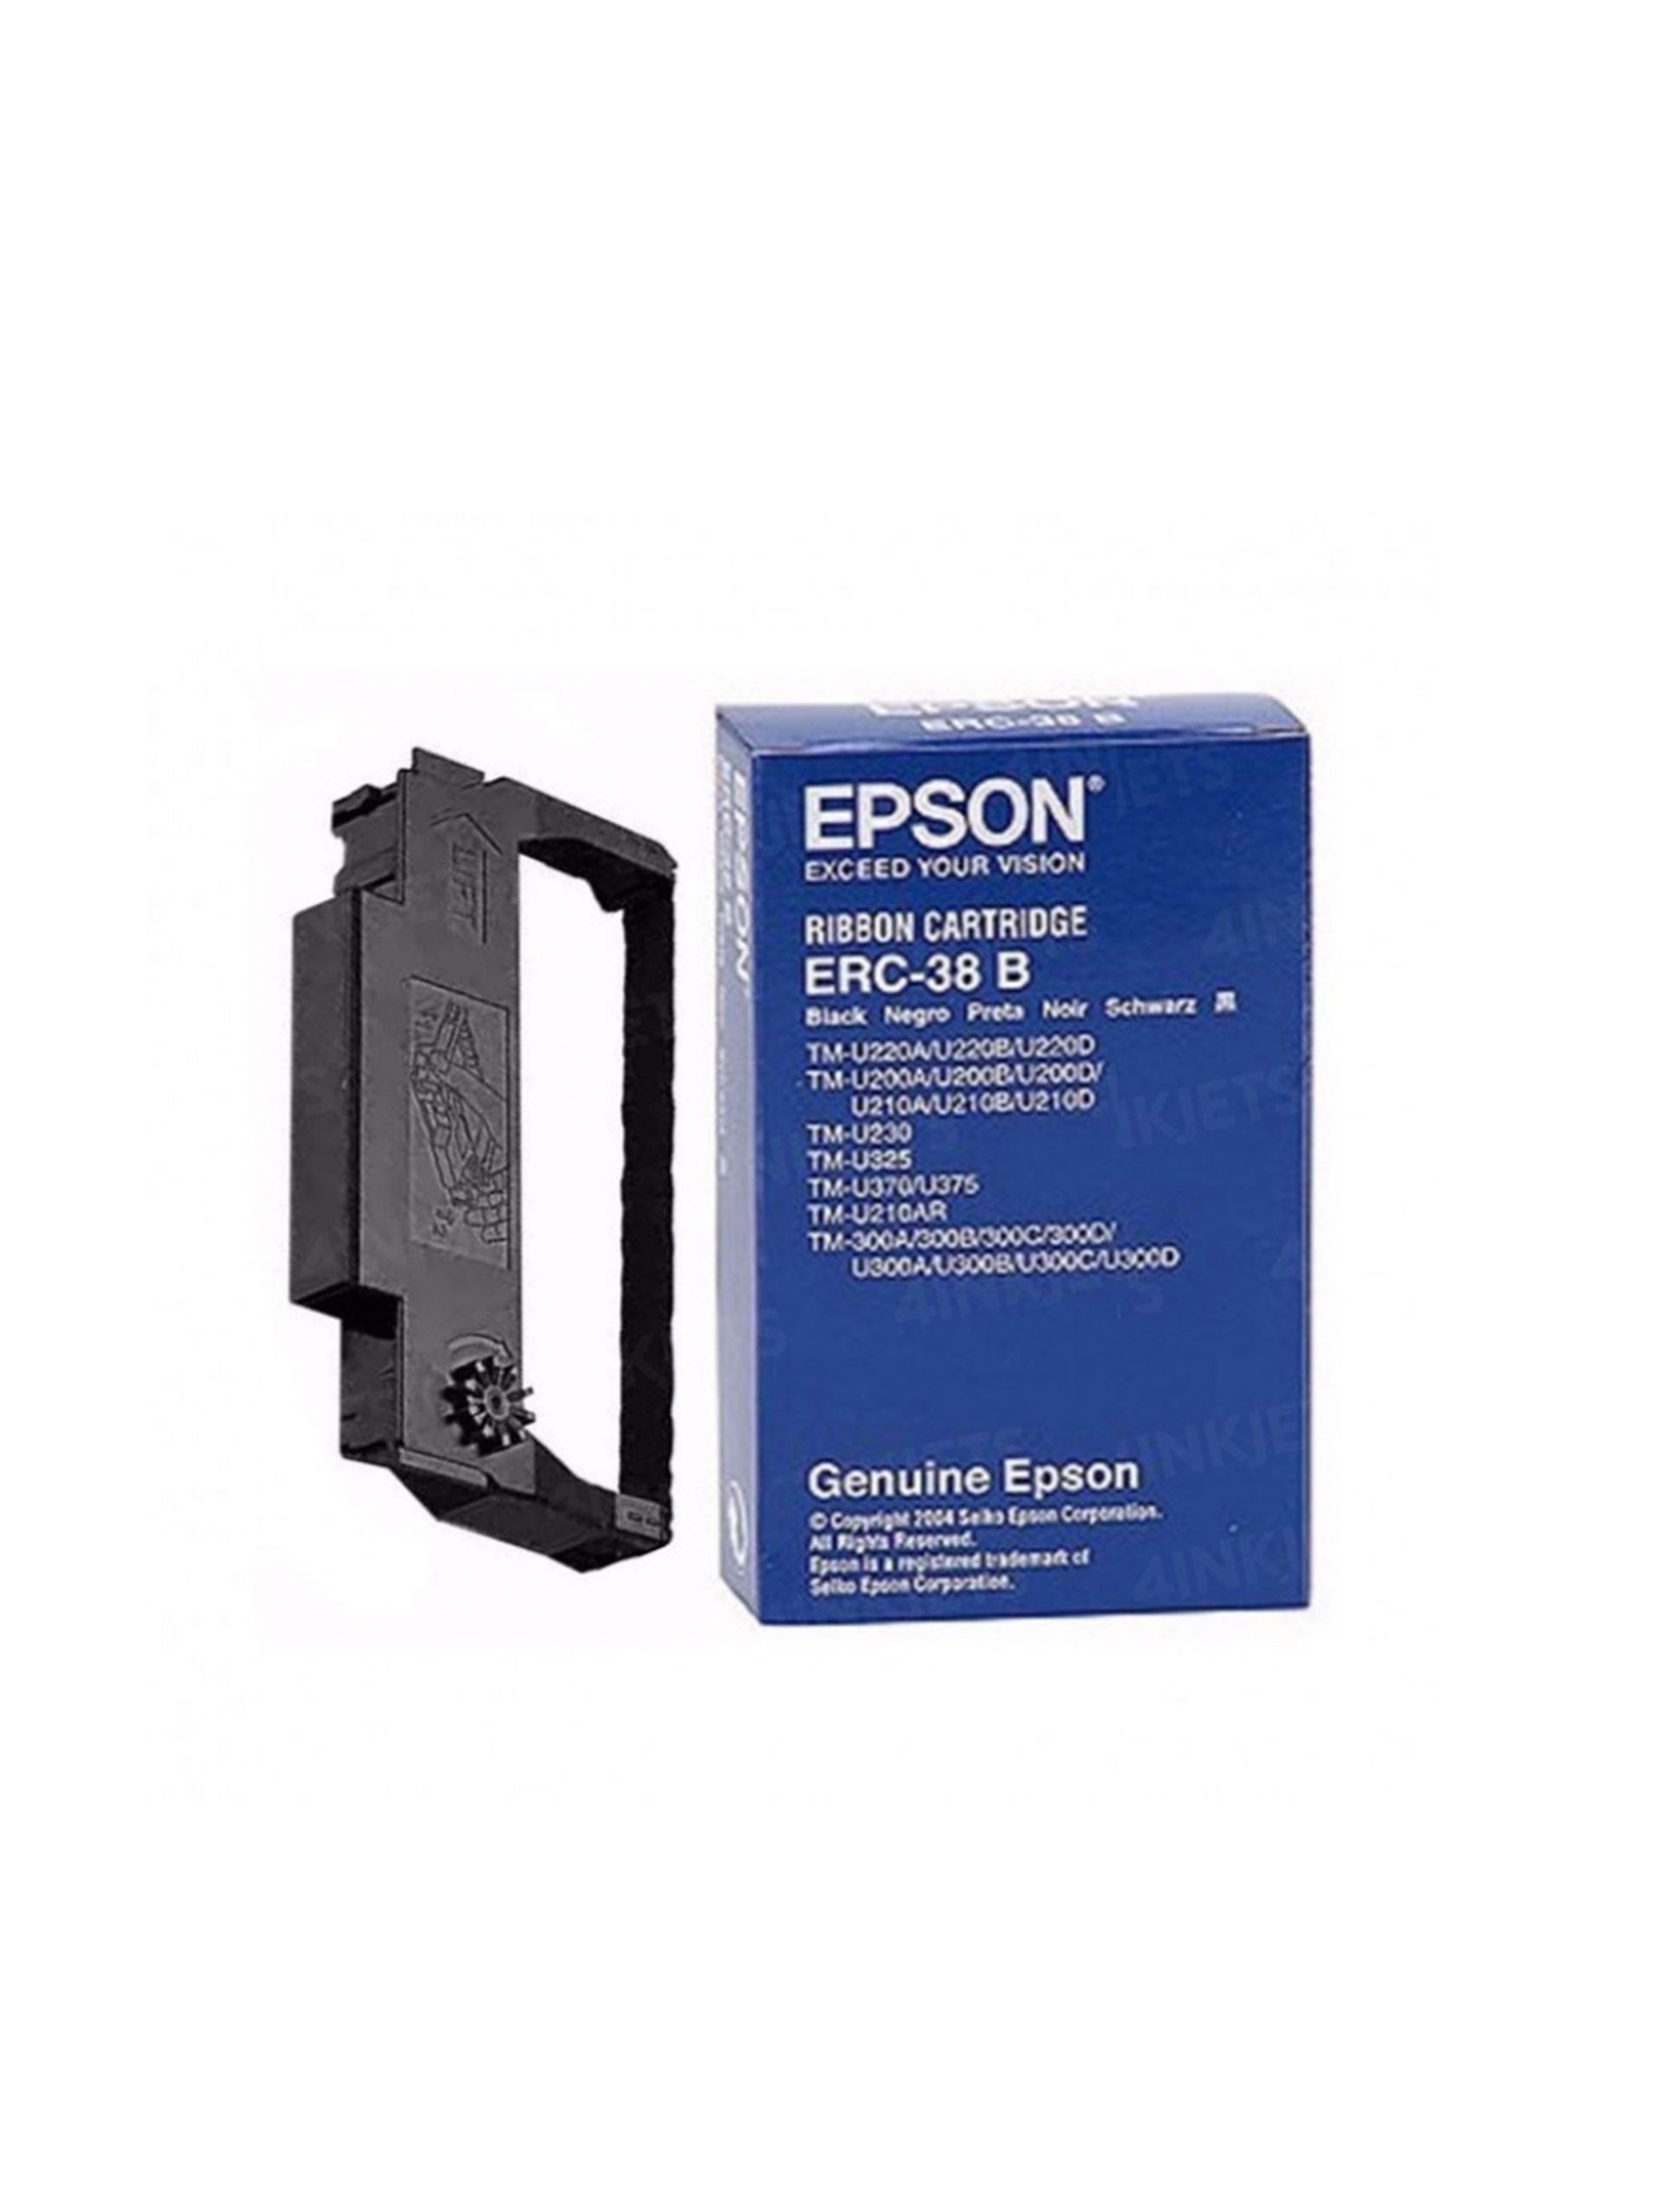 Epson ERC-38 Black Ribbon Cartridge